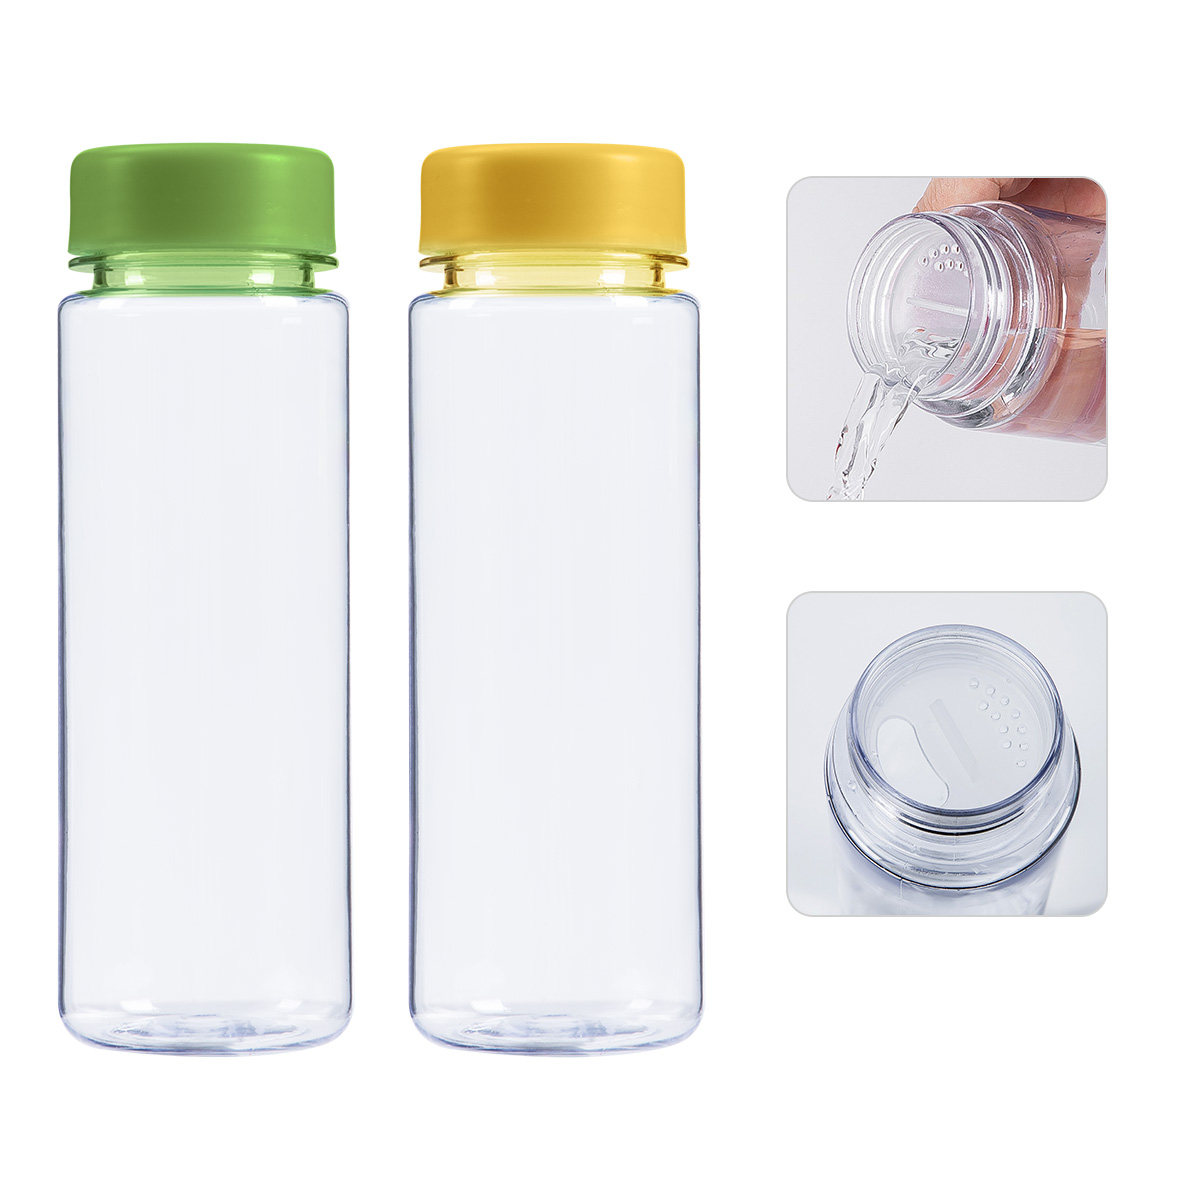 Wie können Wasserflaschen recycelt werden?